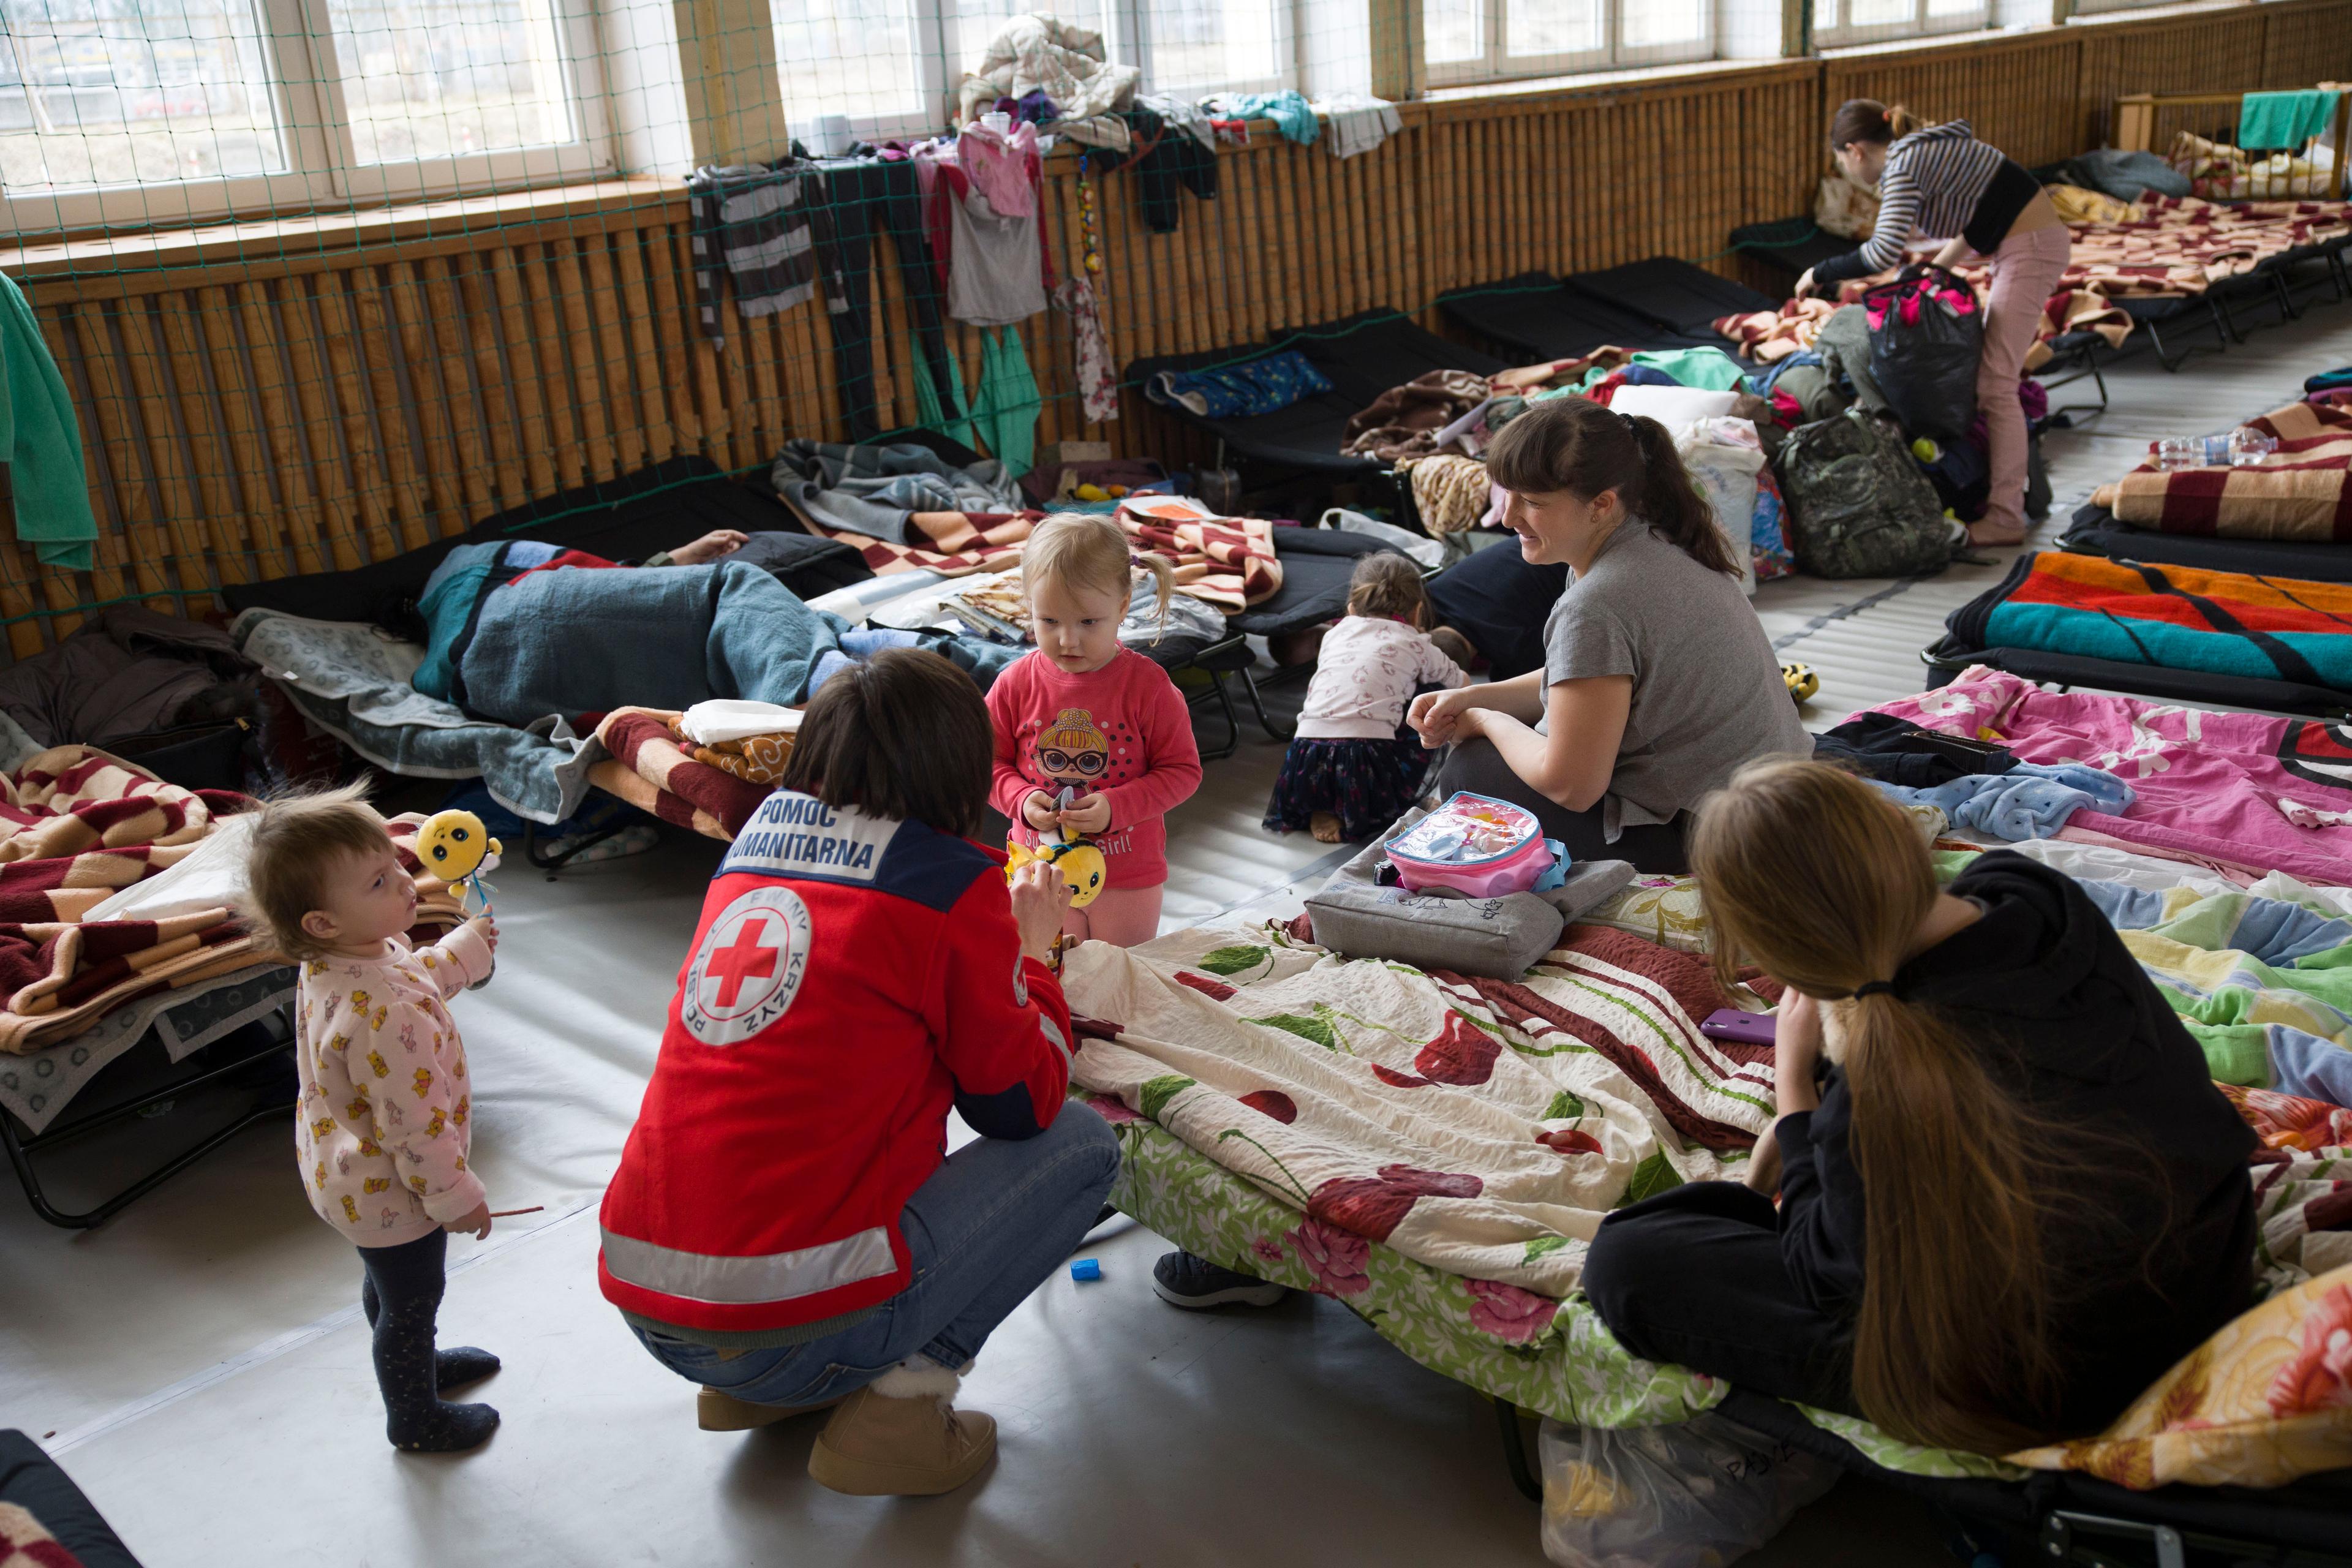 Una donna con un indosso un gilet della Croce Rossa è accovacciata vicino a due donne e ai loro figli. Si trovano in un alloggio provvisorio dove ci sono decine di letti e materassi uno di fianco all’altro.